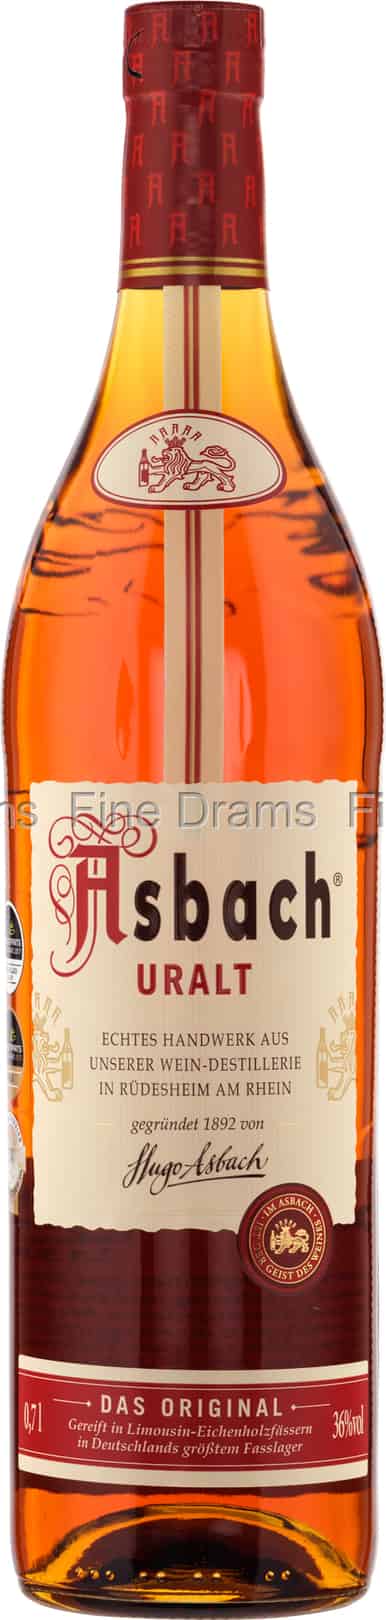 Uralt Asbach Brandy (36%)